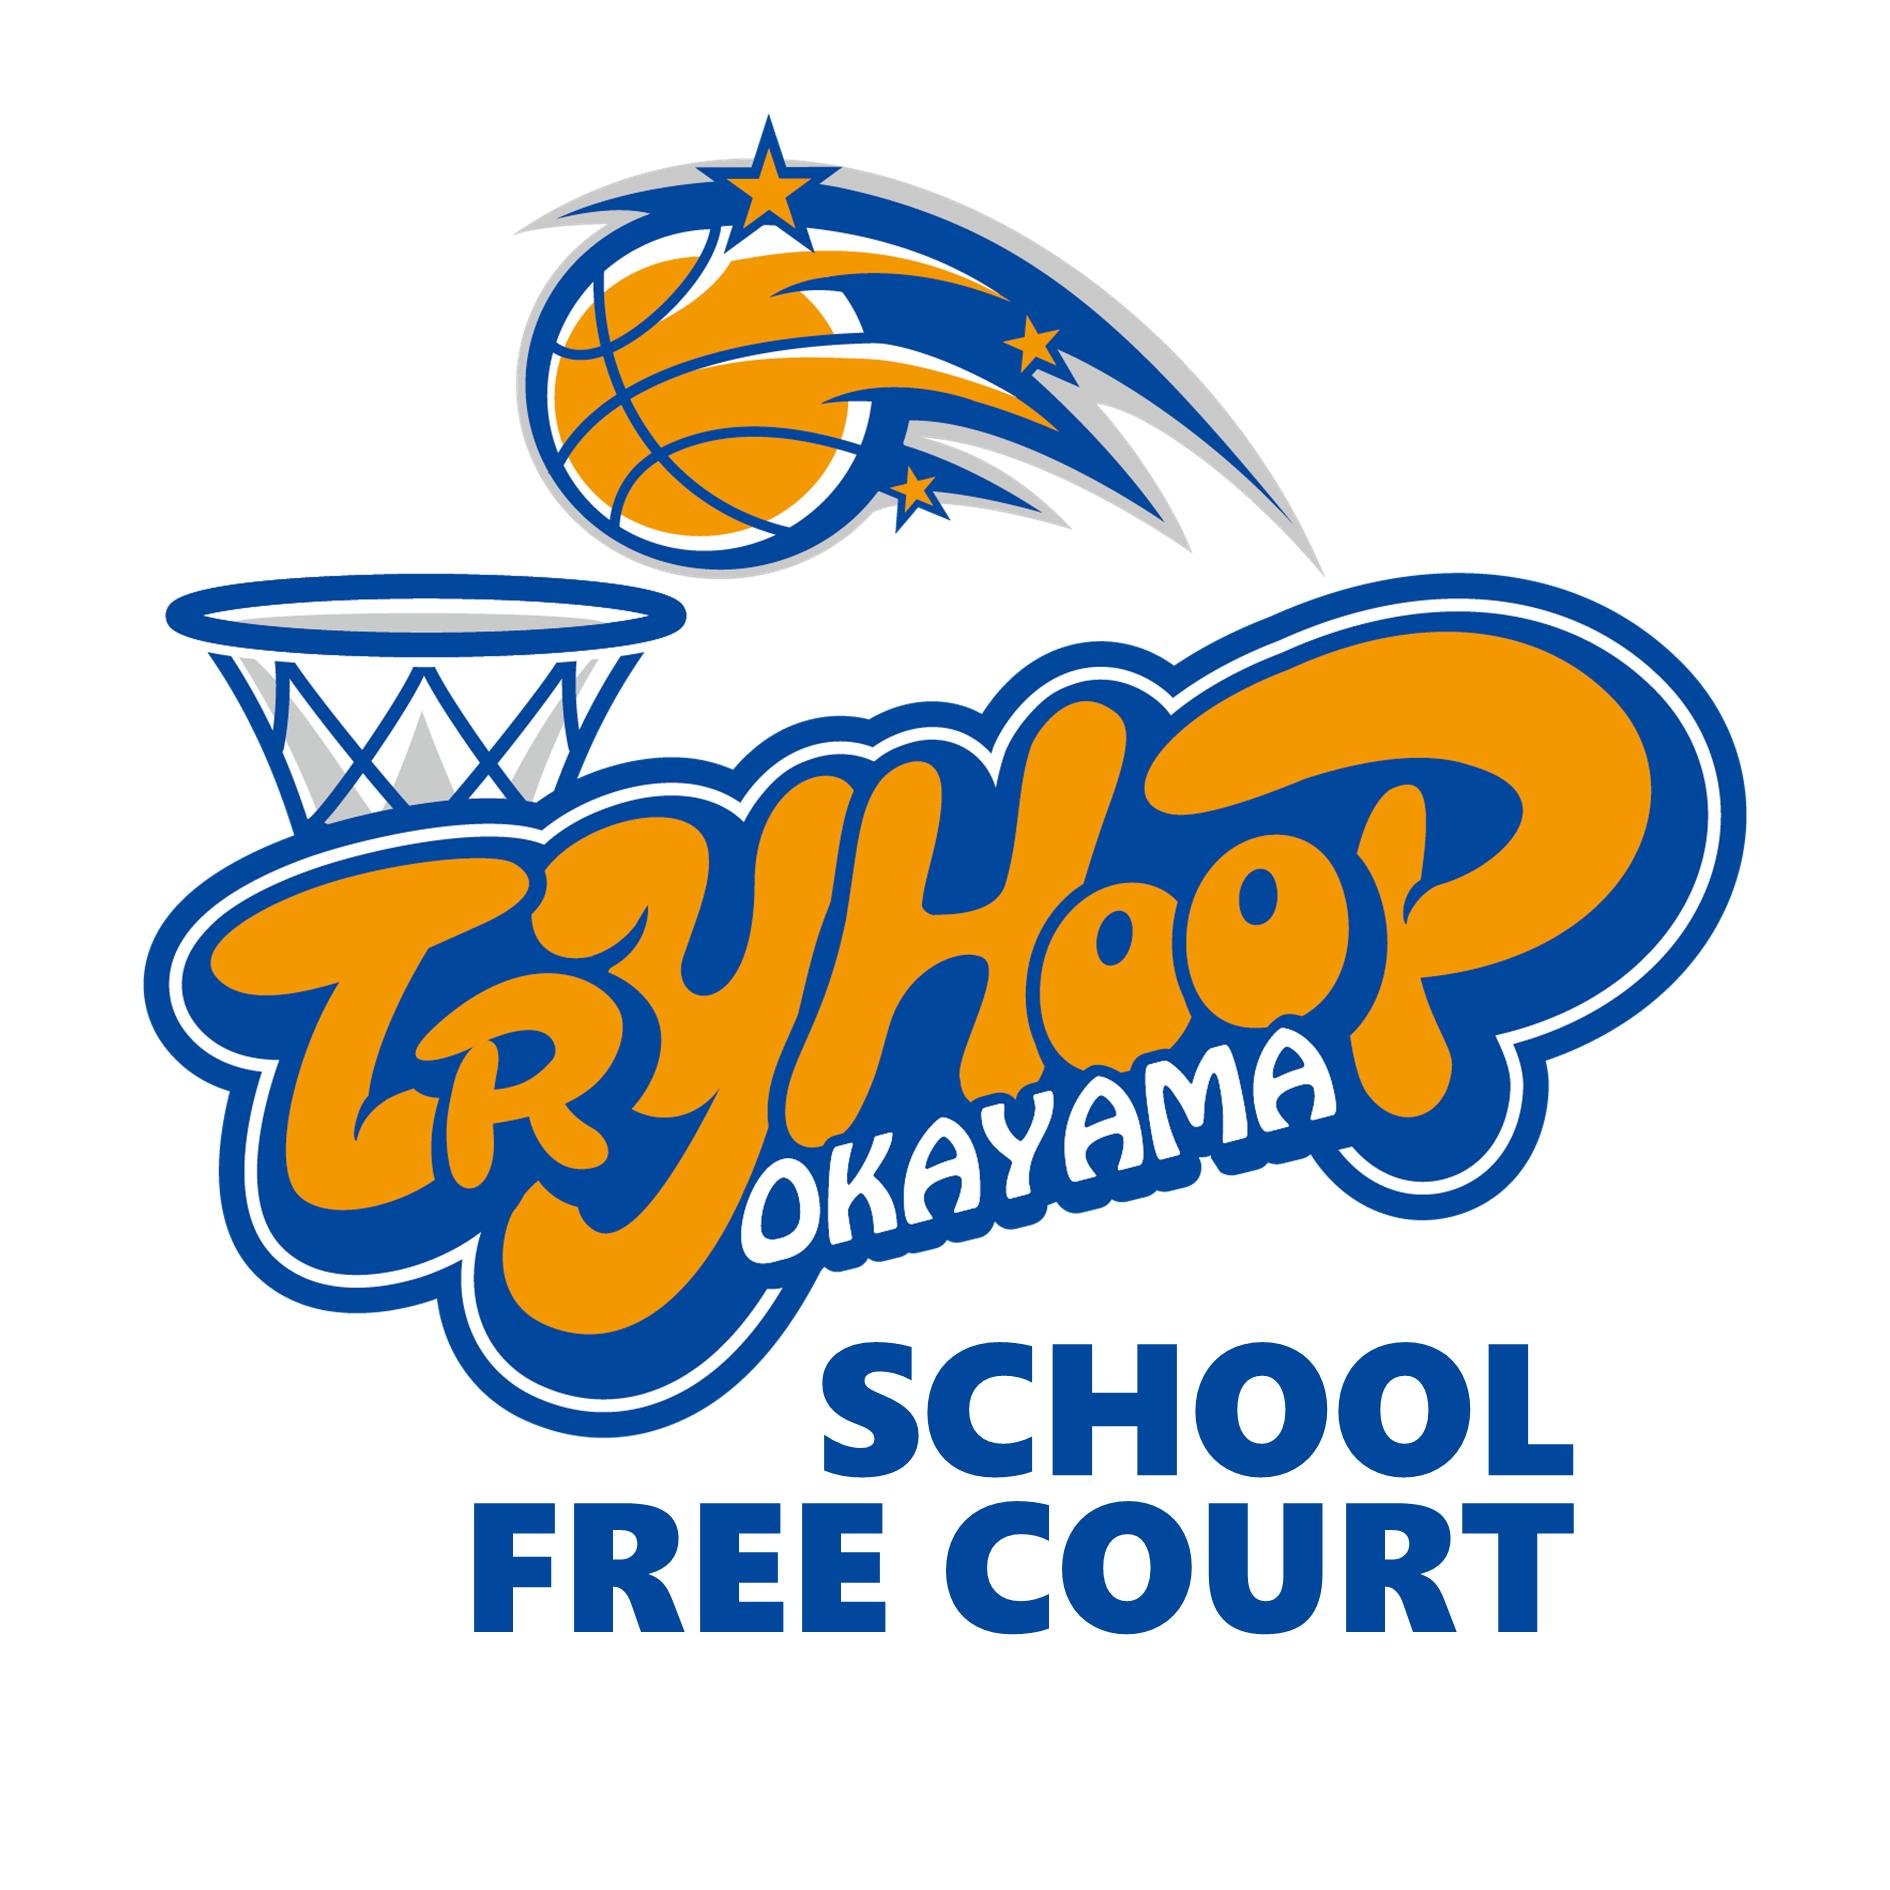 プロバスケットボールチーム･トライフープ岡山が運営するバスケットボールスクールとフリーコートです‼️スクール情報とトップチームのリポストが主。基本はInstagramがメインです📲